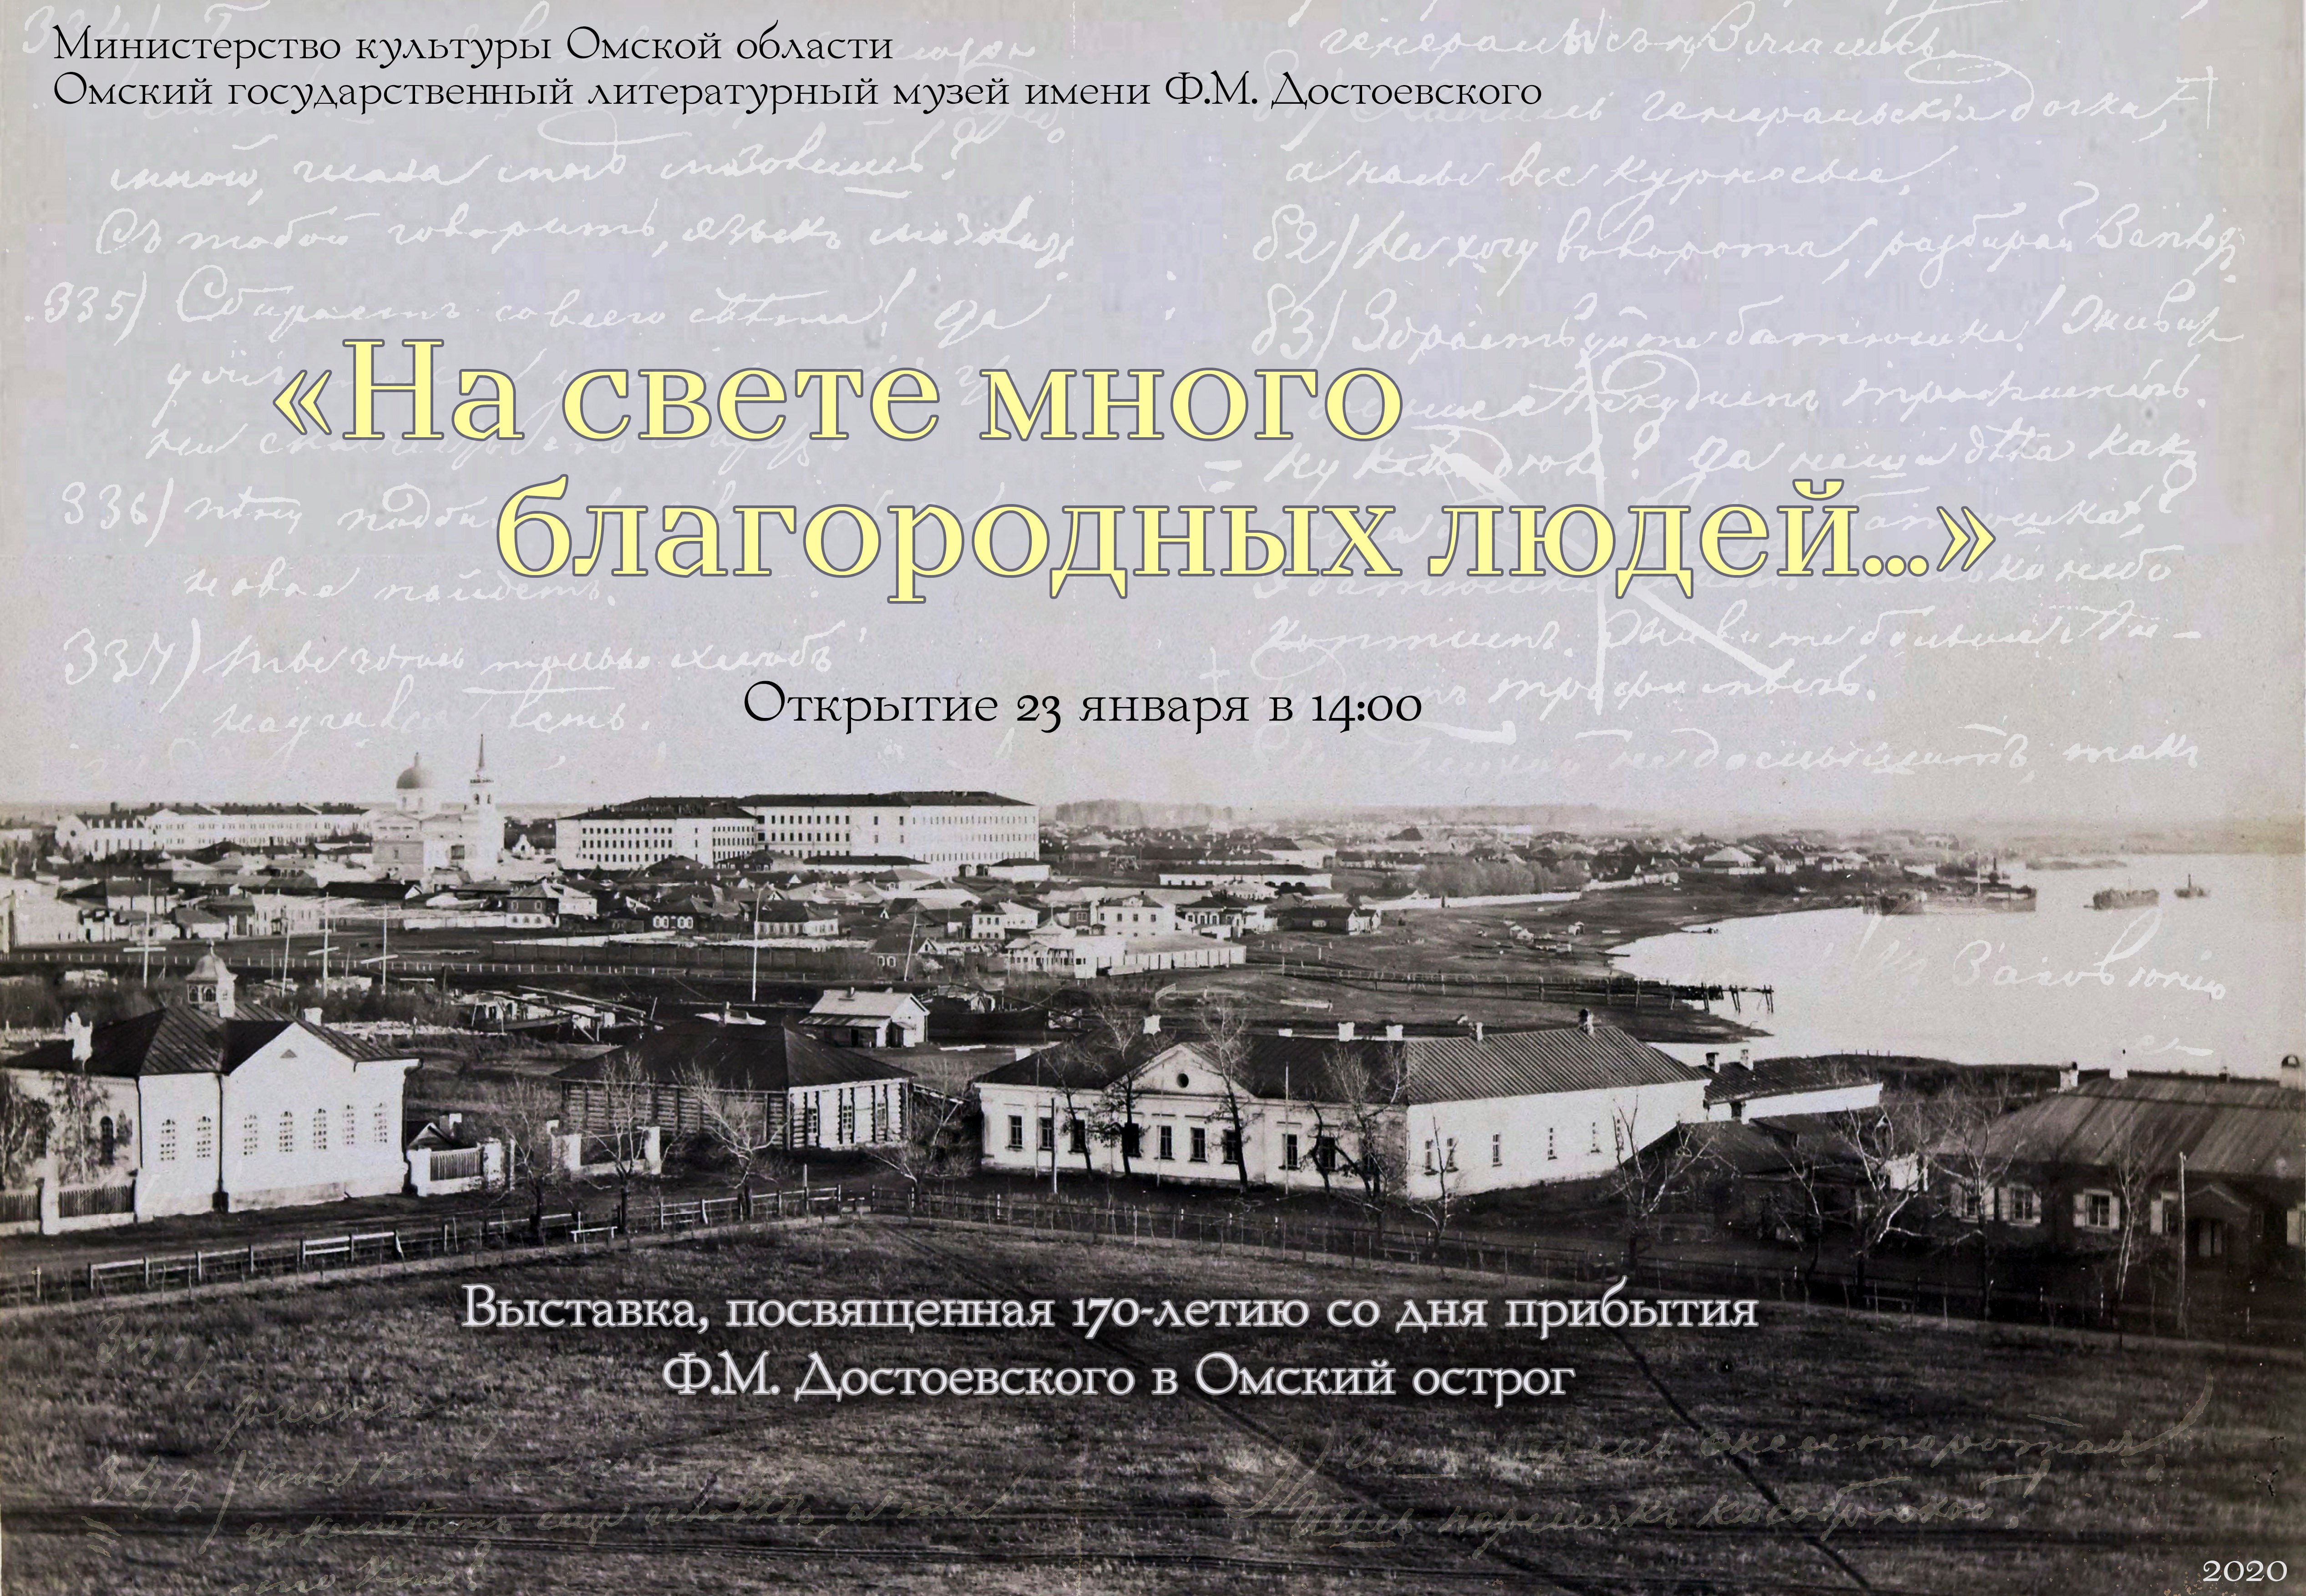 Ровно 170 лет назад Достоевский прибыл в Омск